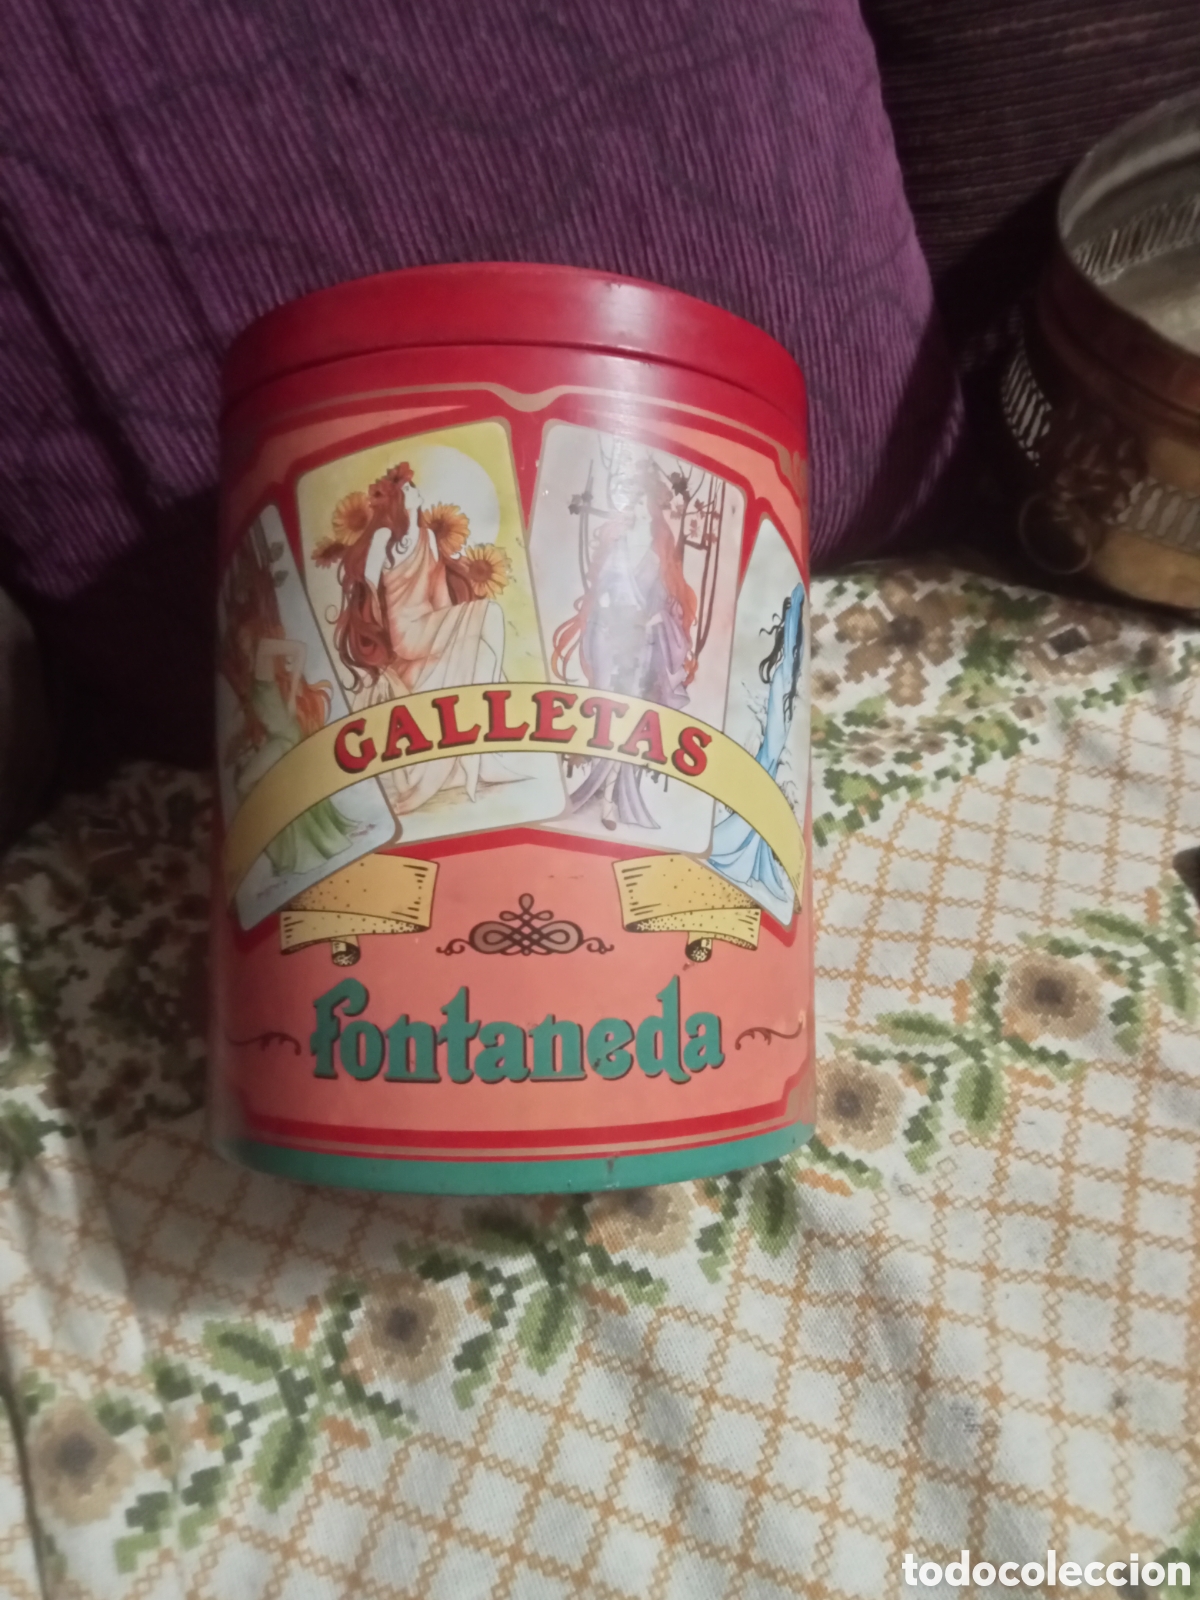 caja metálica de galletas wonderful - Compra venta en todocoleccion